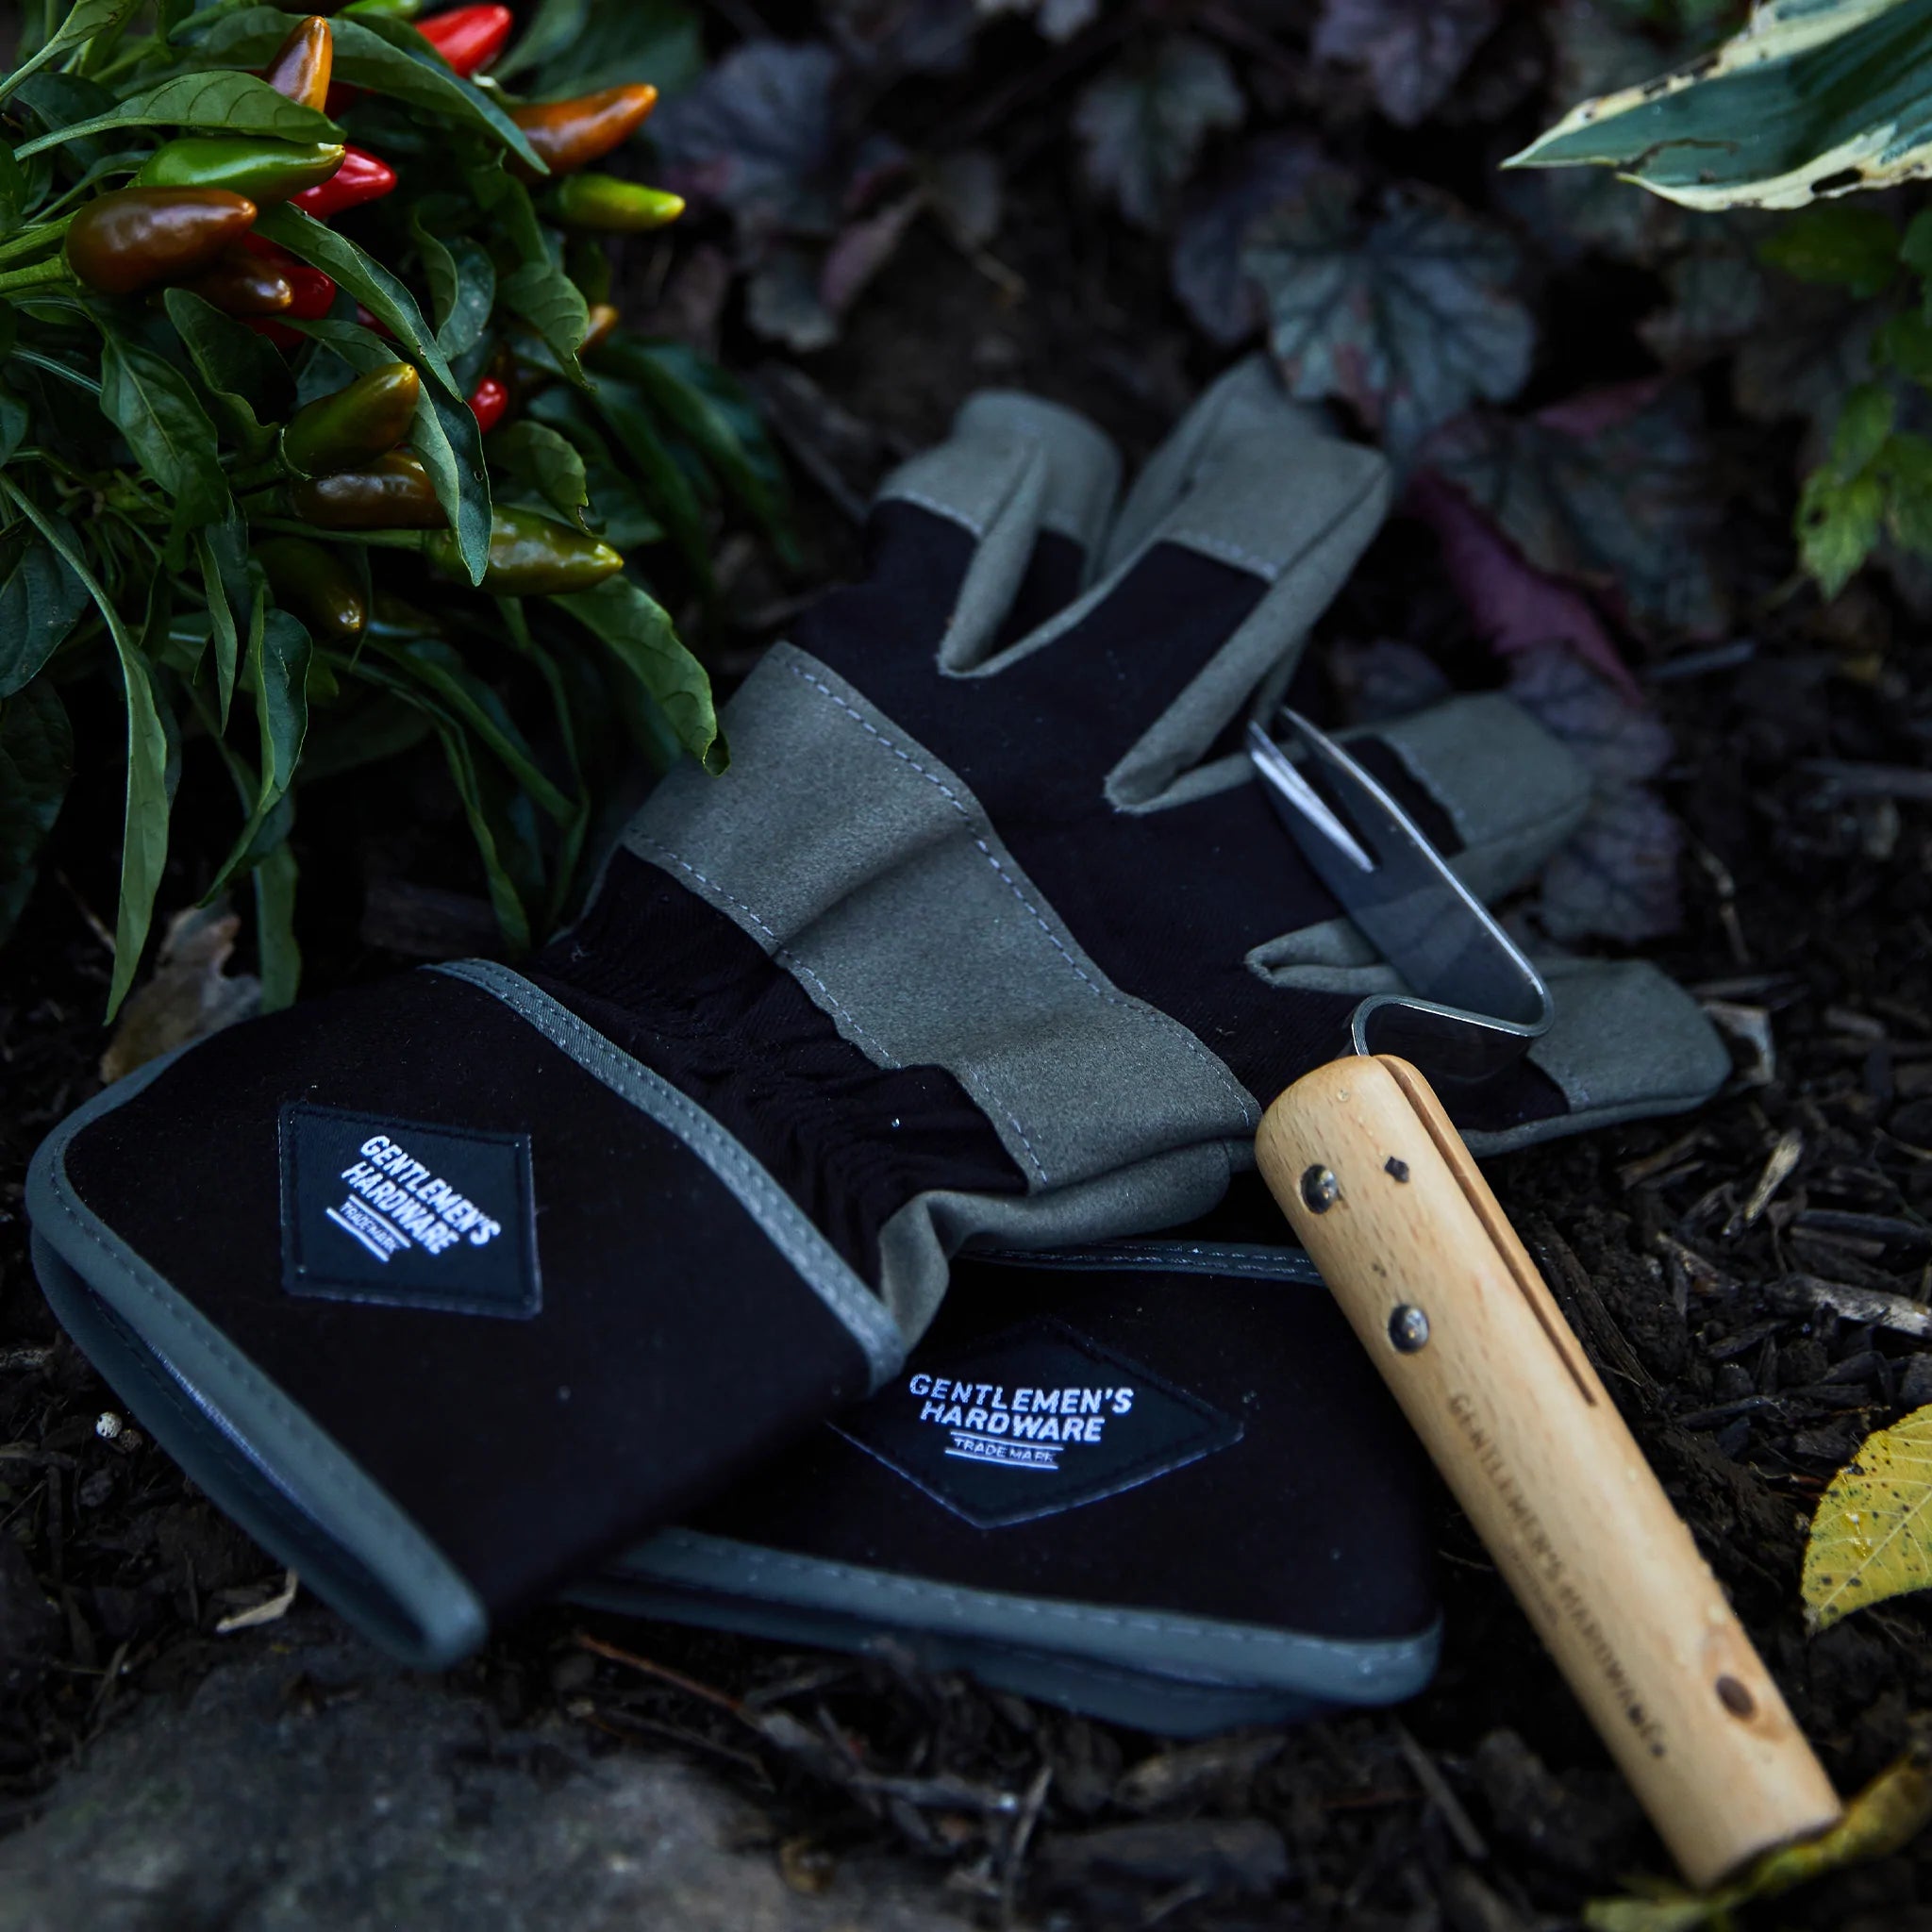 Gentleman's Hardware Garden Gloves and Root Lifter